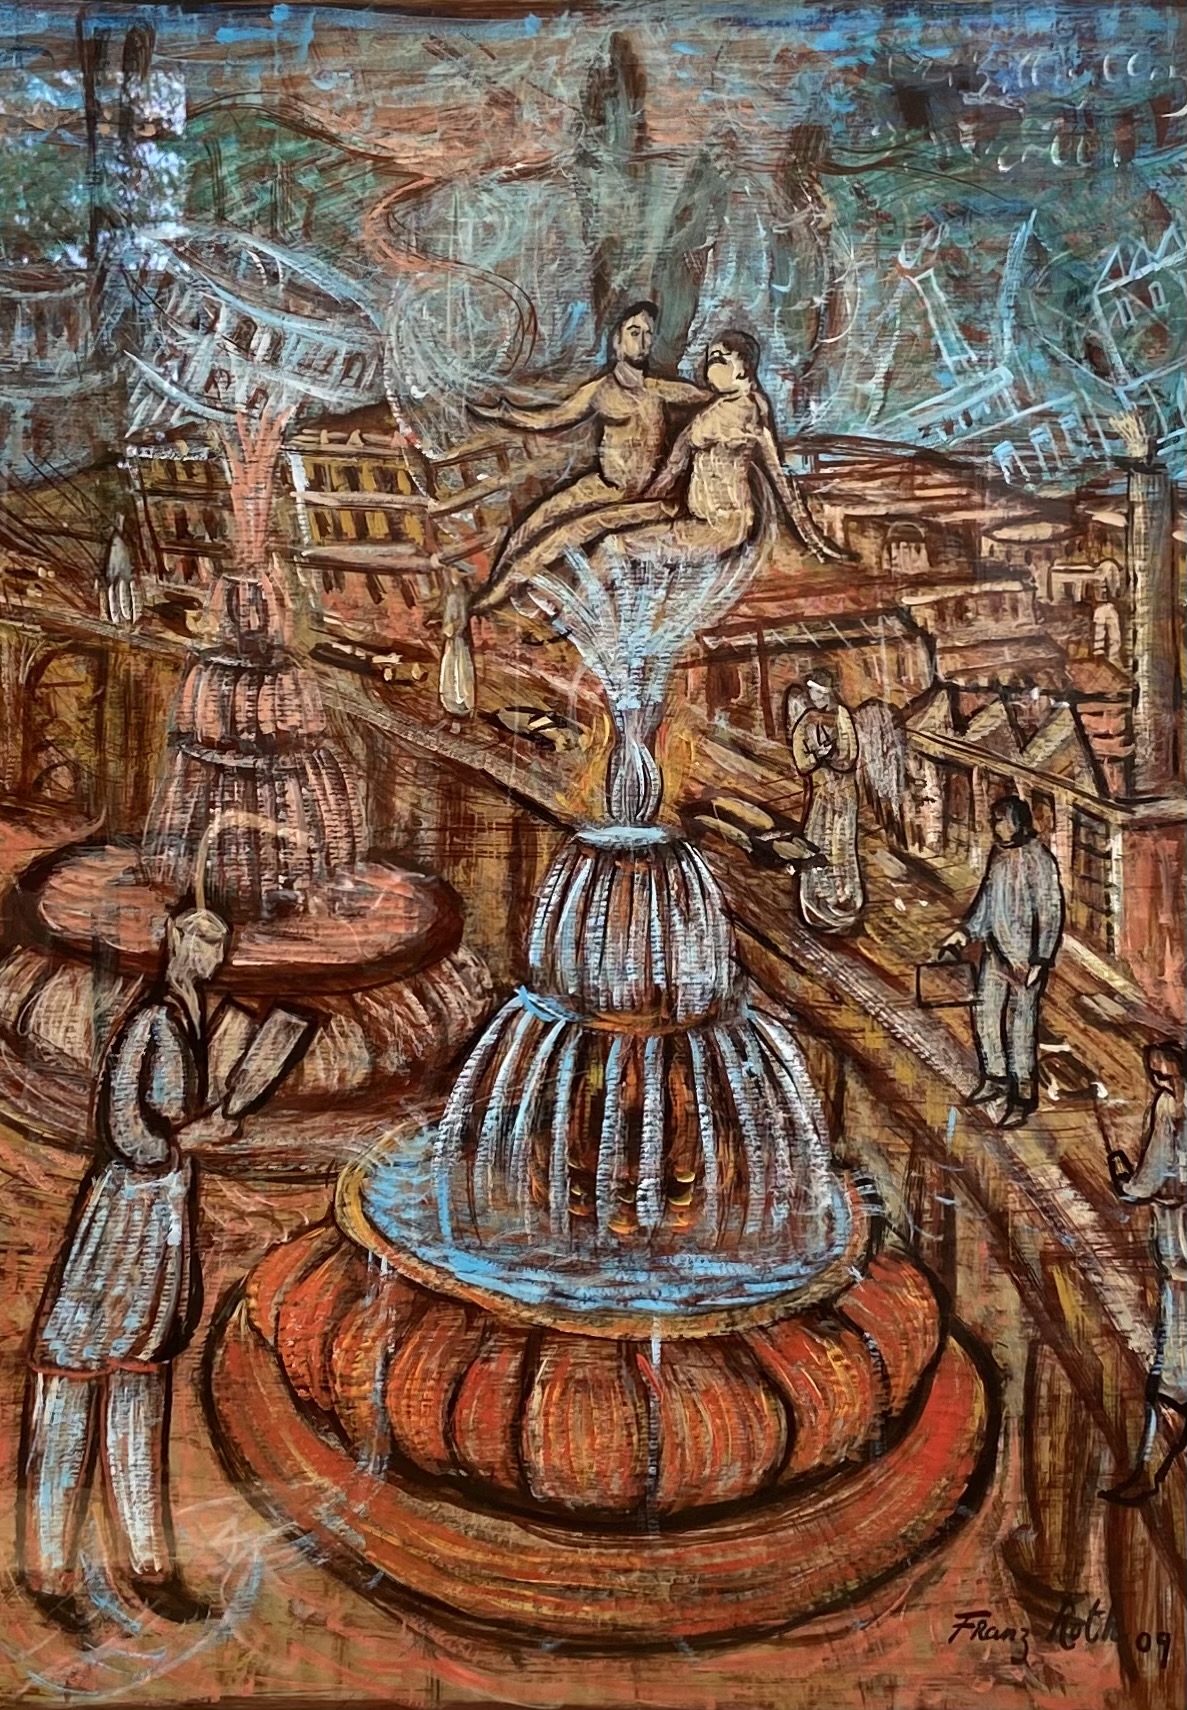 FRANZ ROTH, Brunnen, 2009, Tinte und Gouache auf Papier, 80 x 60 cm